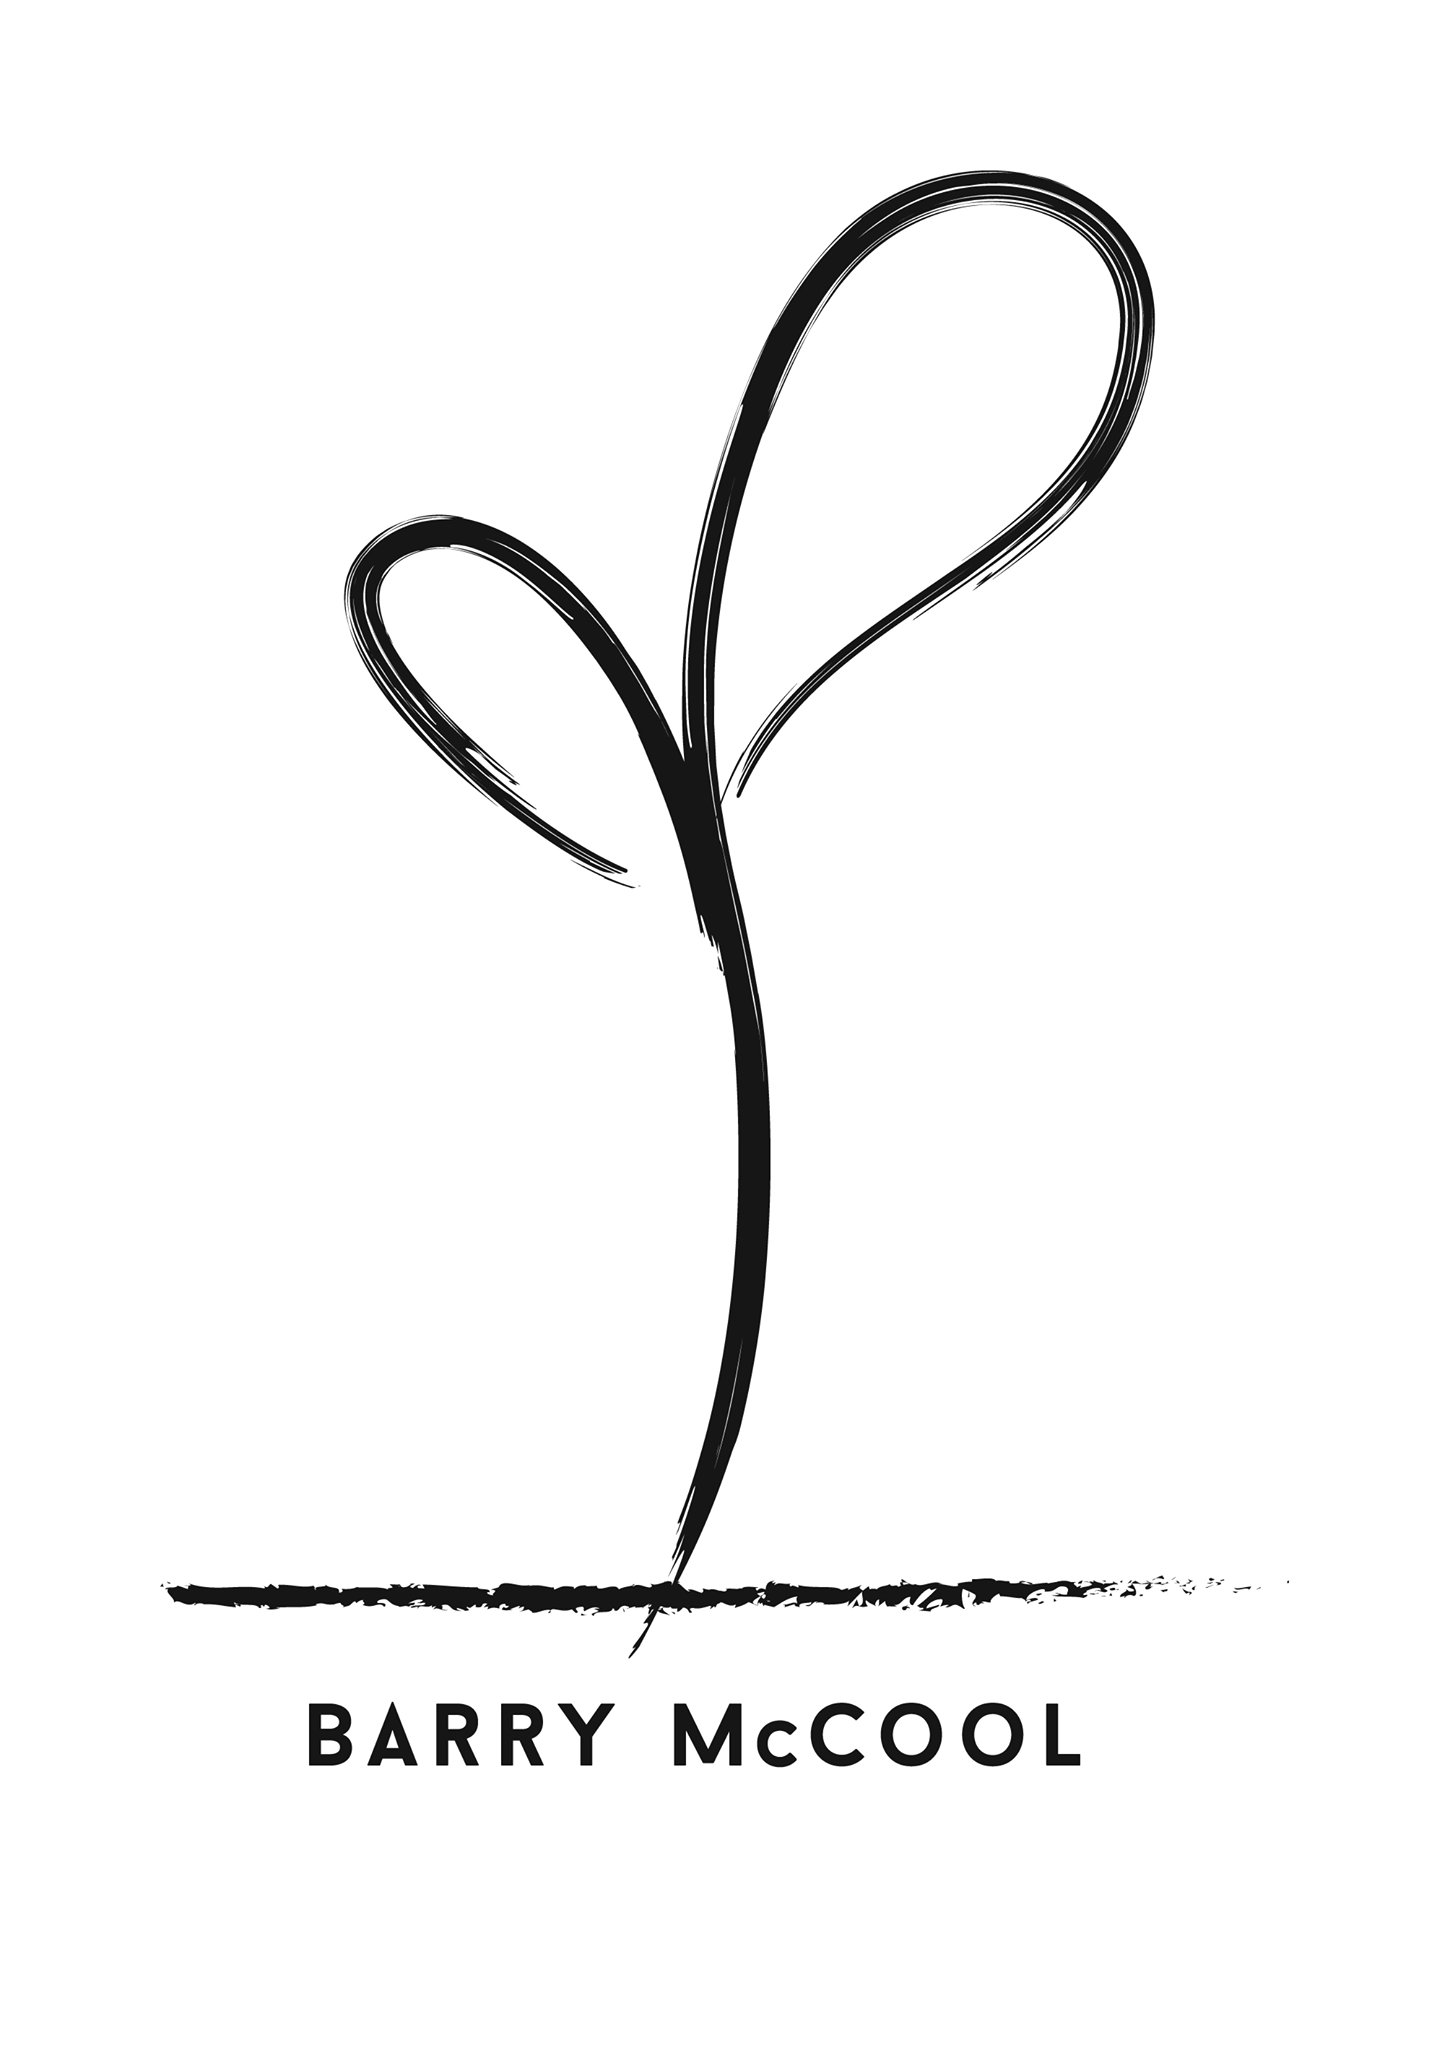 BARRY MCCOOL